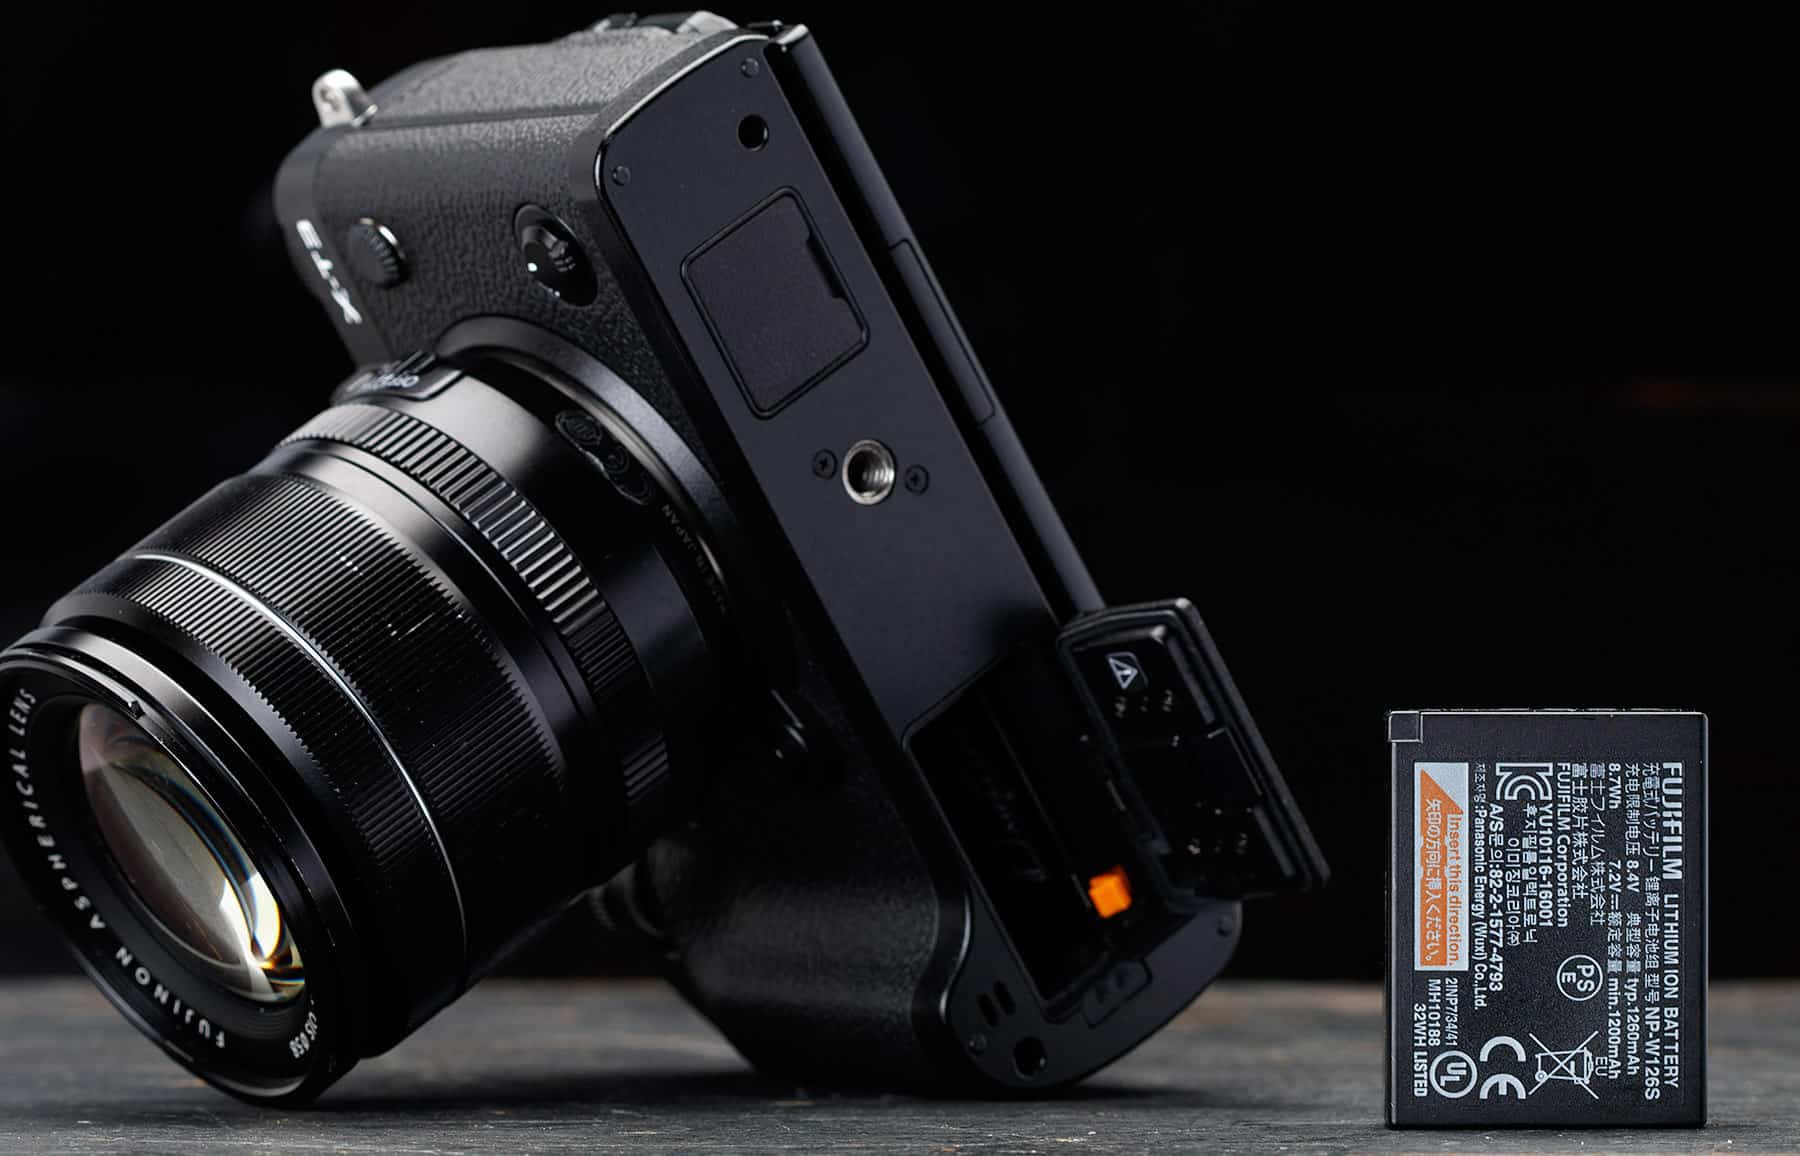 Máy ảnh Fujifilm X-T3 với ống kính XF 16-80mm (Black)